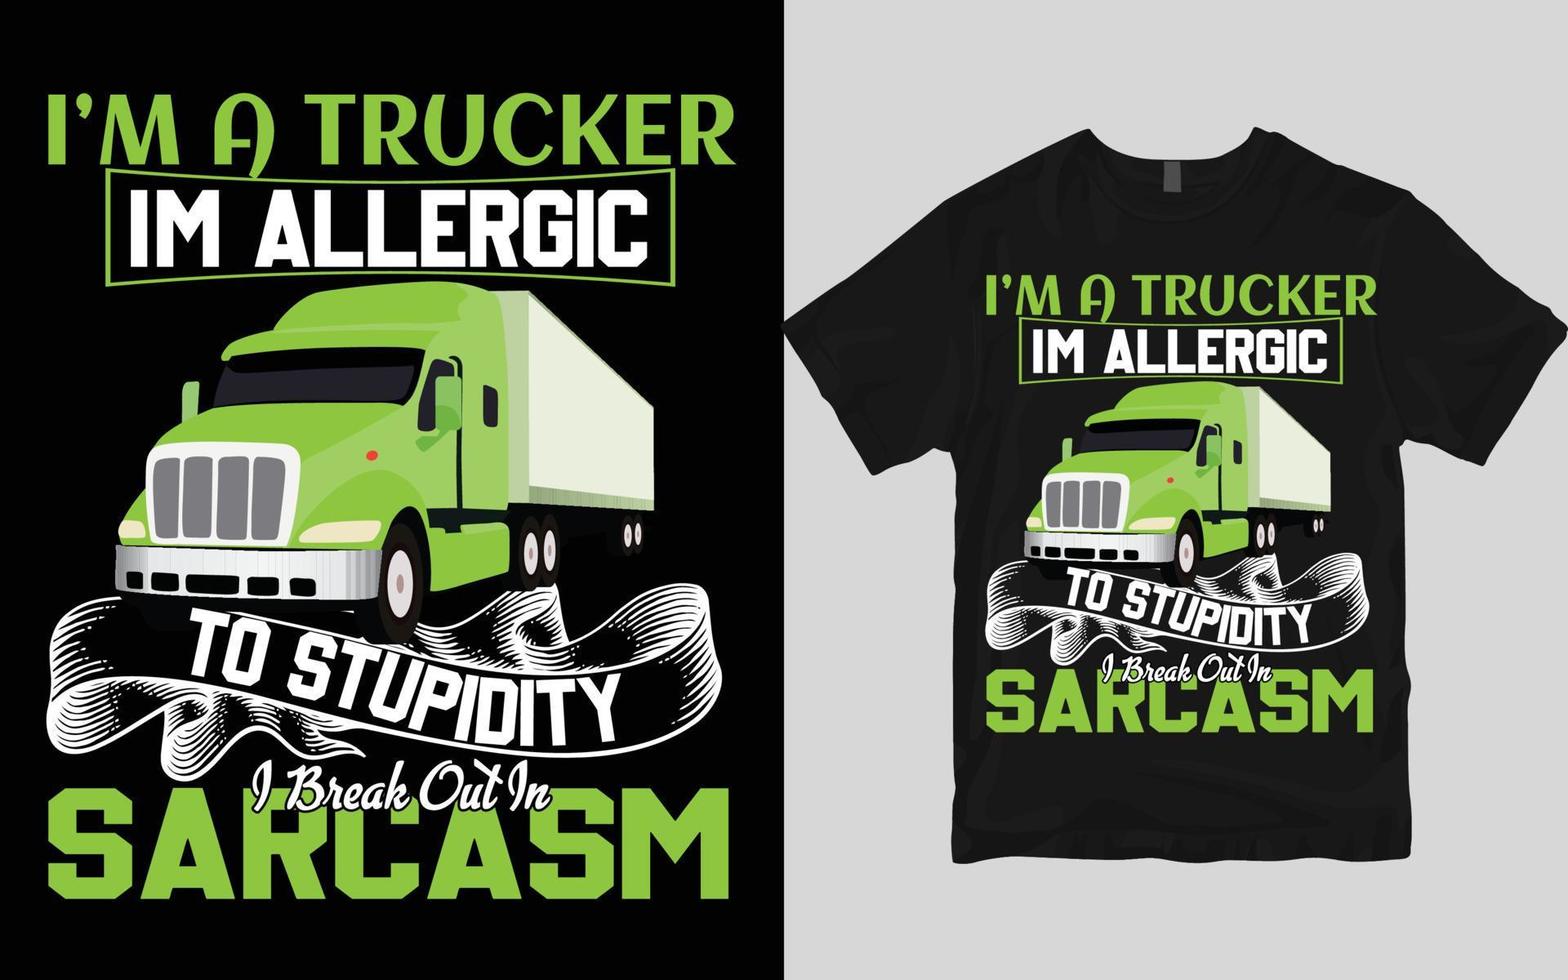 Truck t shirt design vector